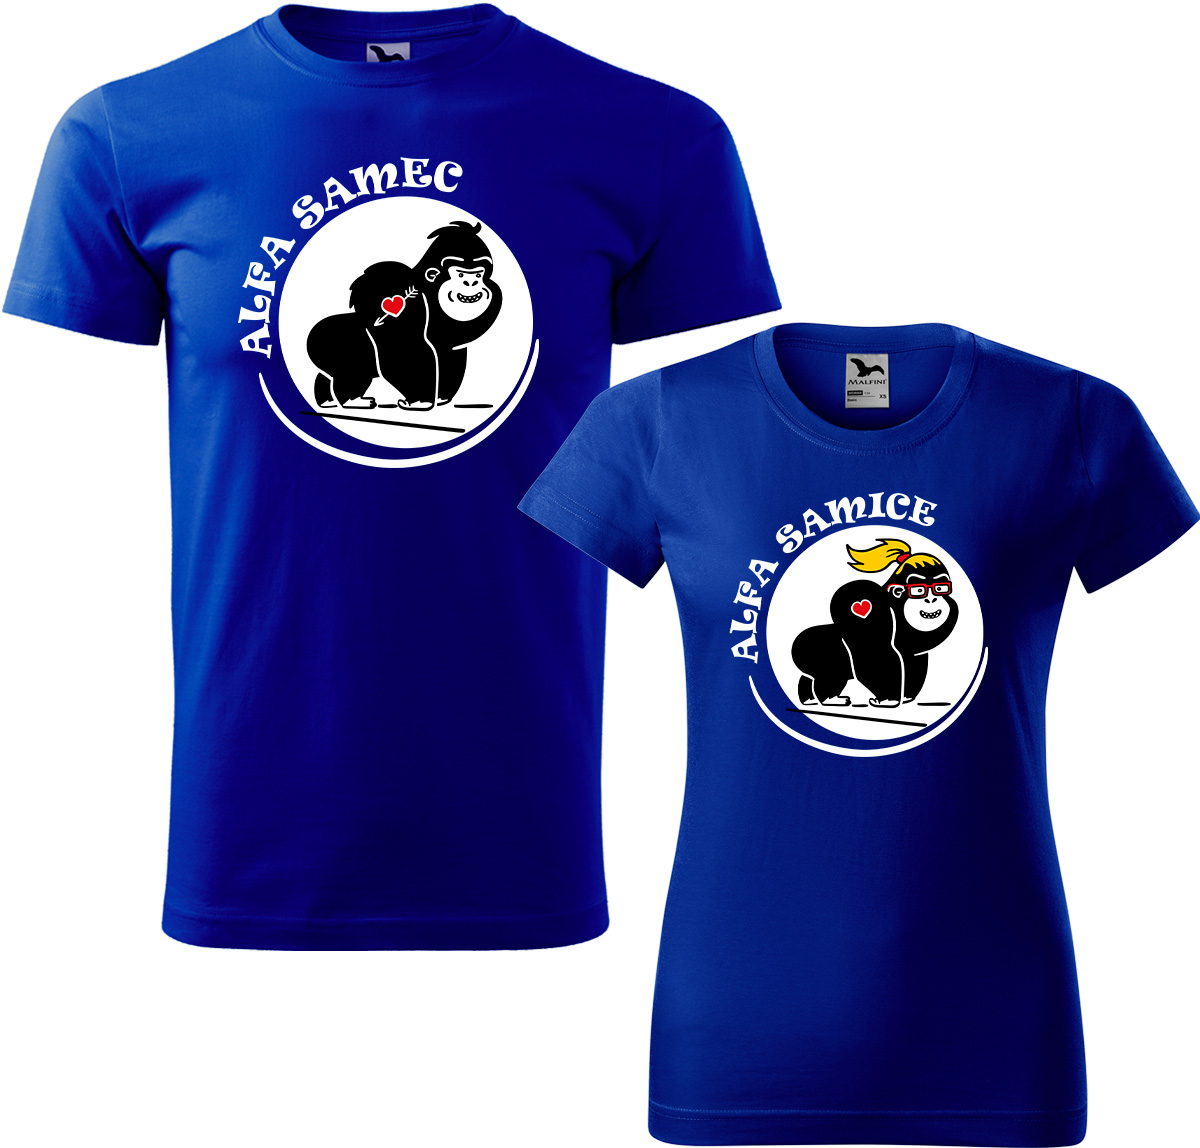 Trička pro páry - Alfa samec a alfa samice Barva: Královská modrá (05), Velikost dámské tričko: S, Velikost pánské tričko: XL